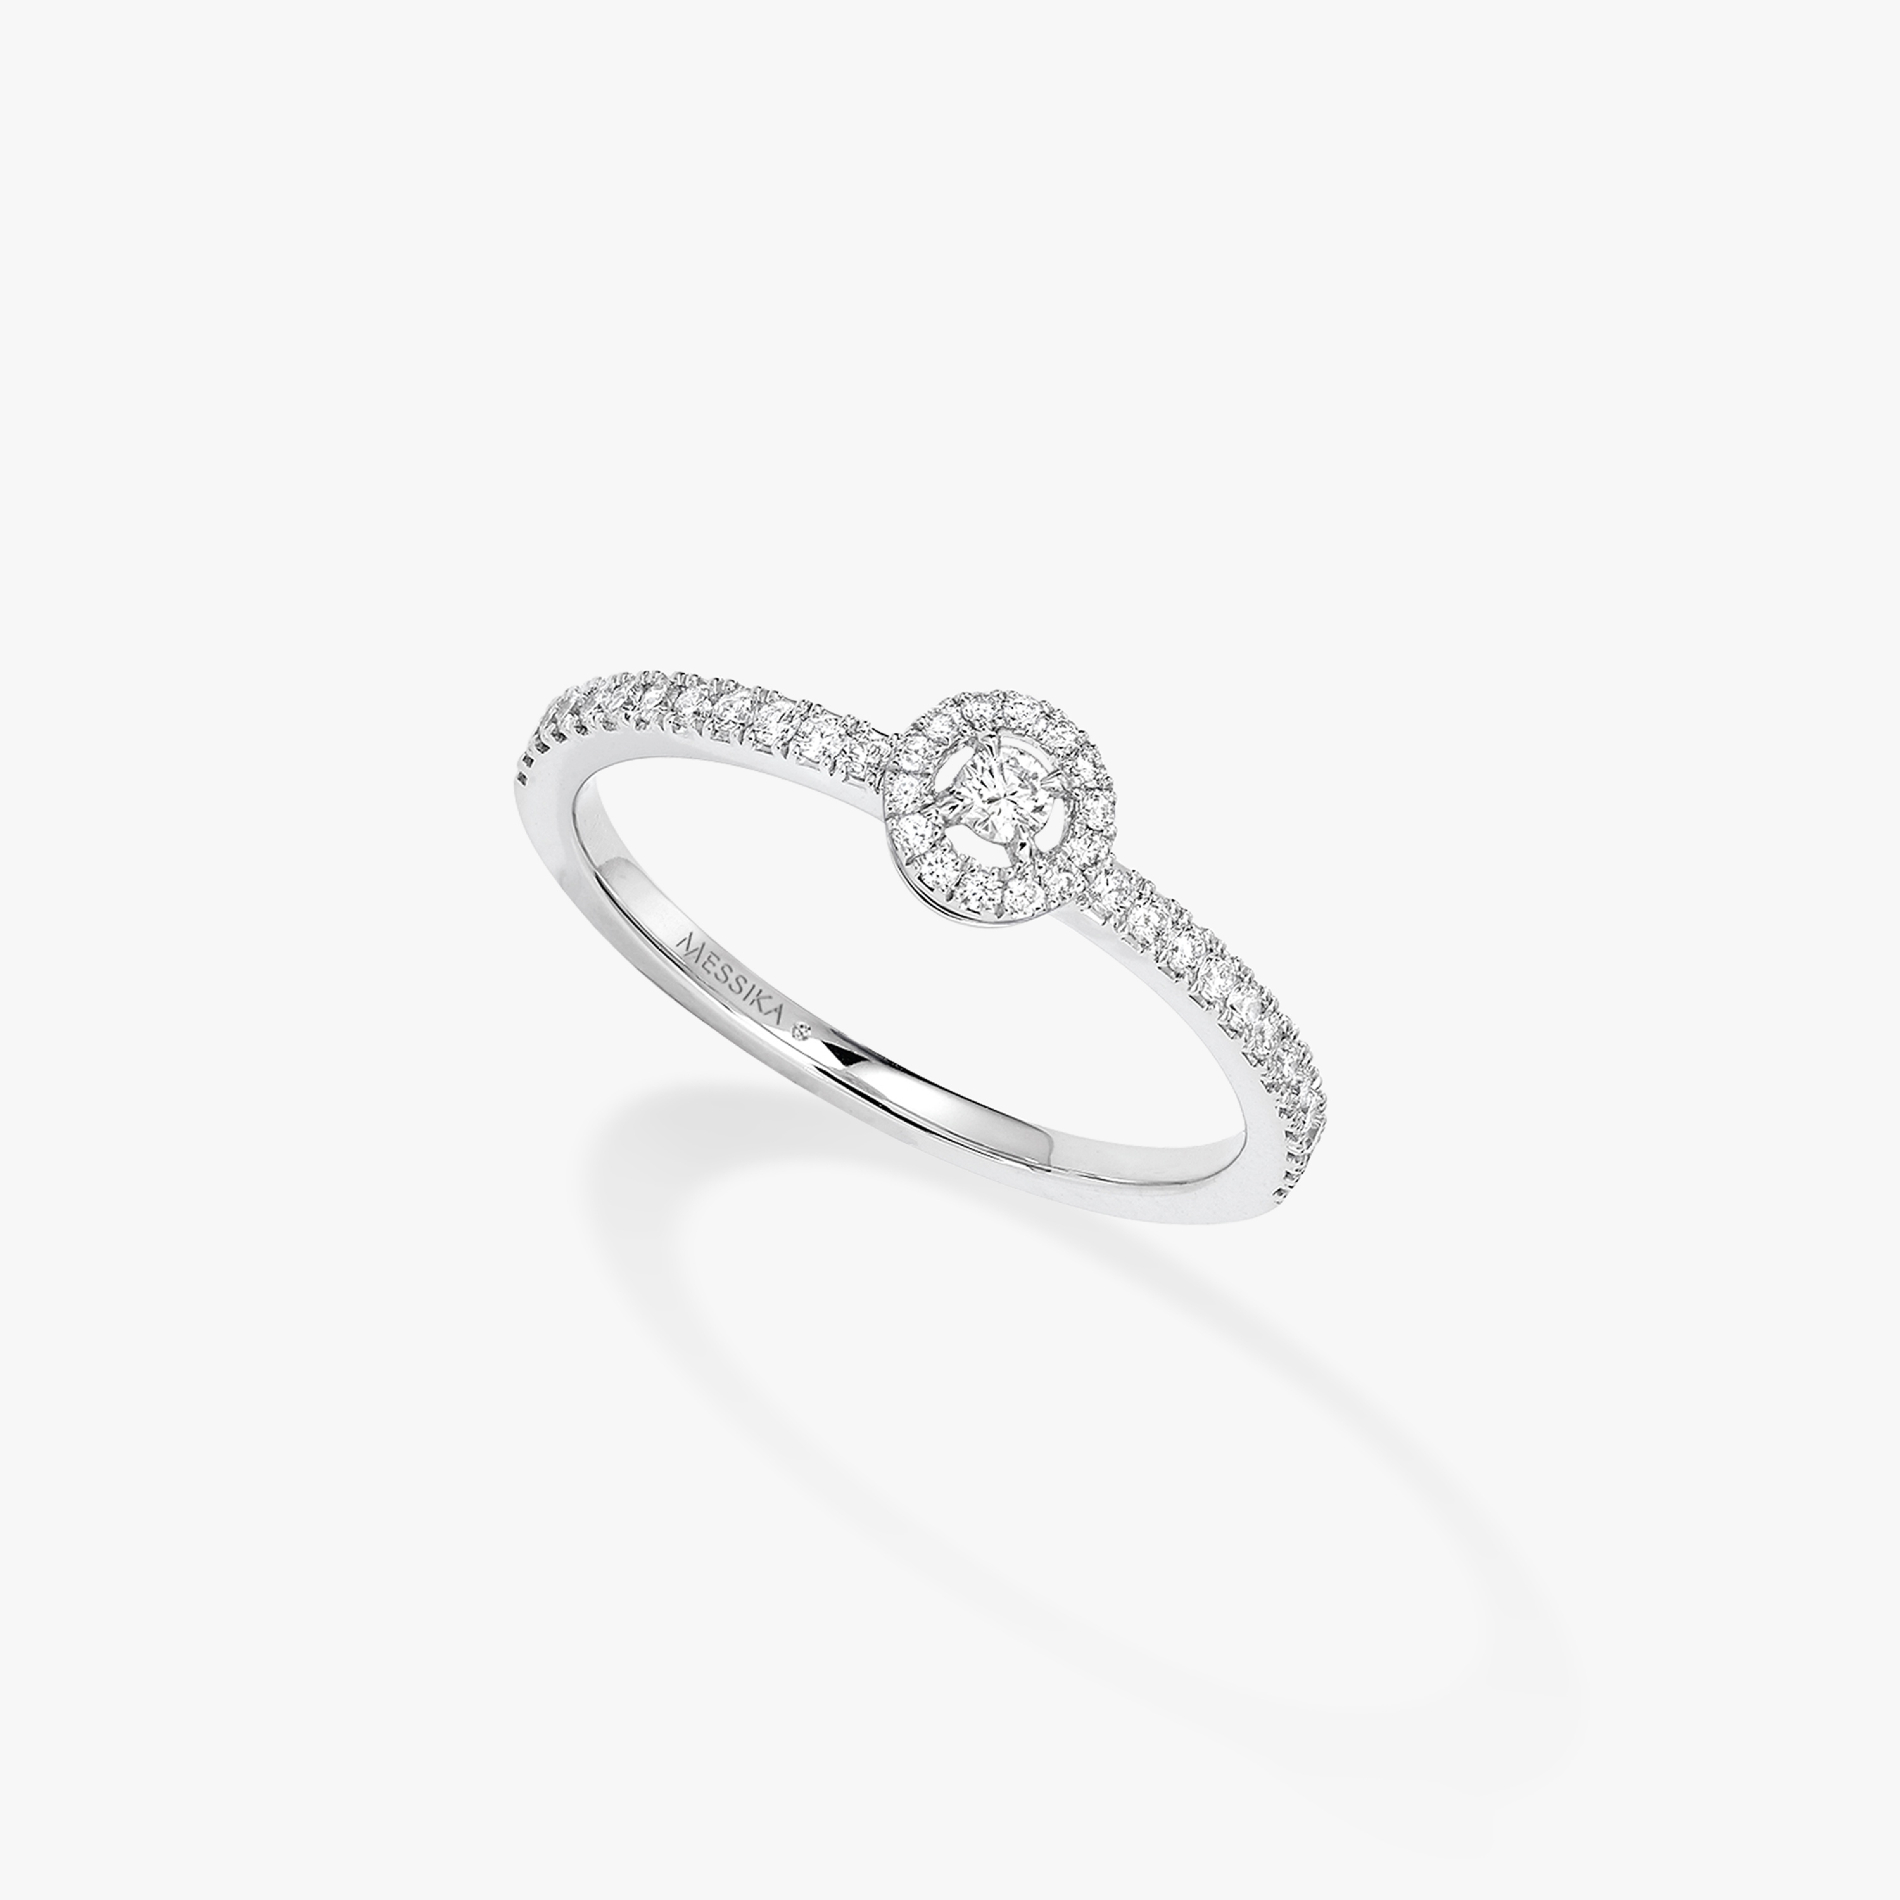 Joy SM White Gold For Her Diamond Ring 05493-WG